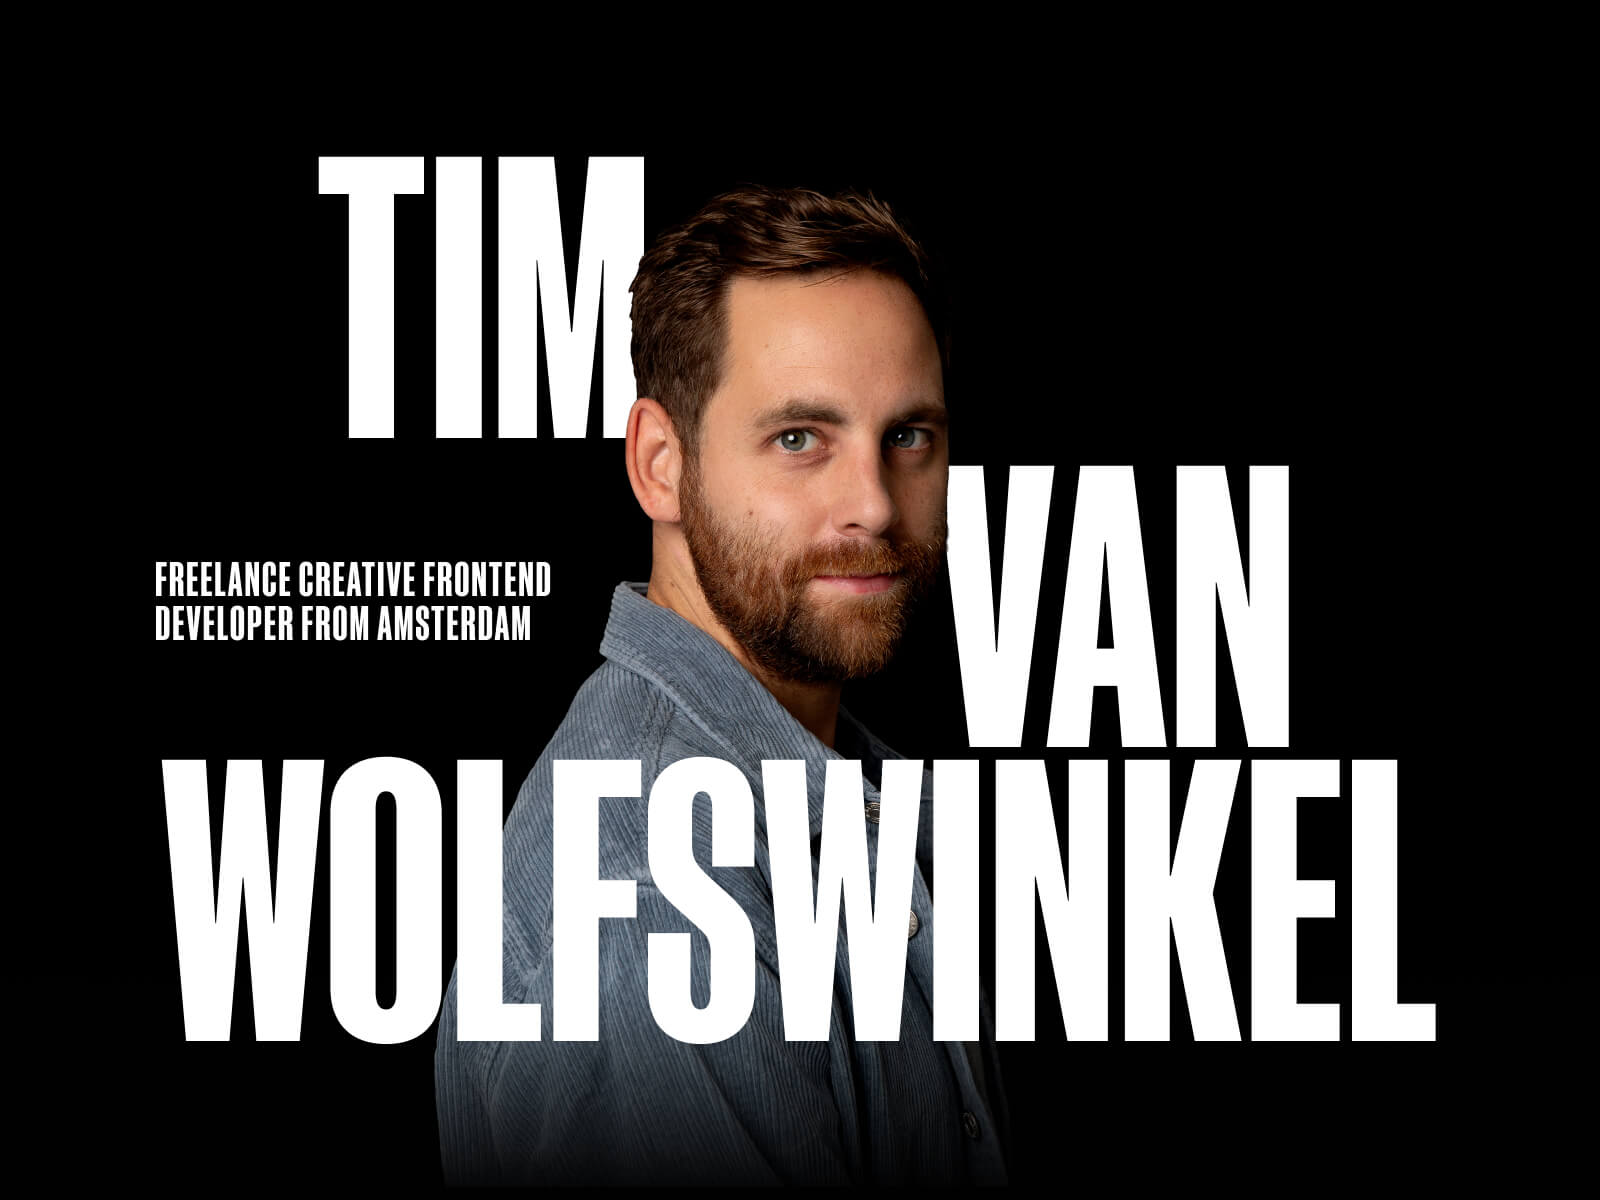 Tim van Wolfswinkel